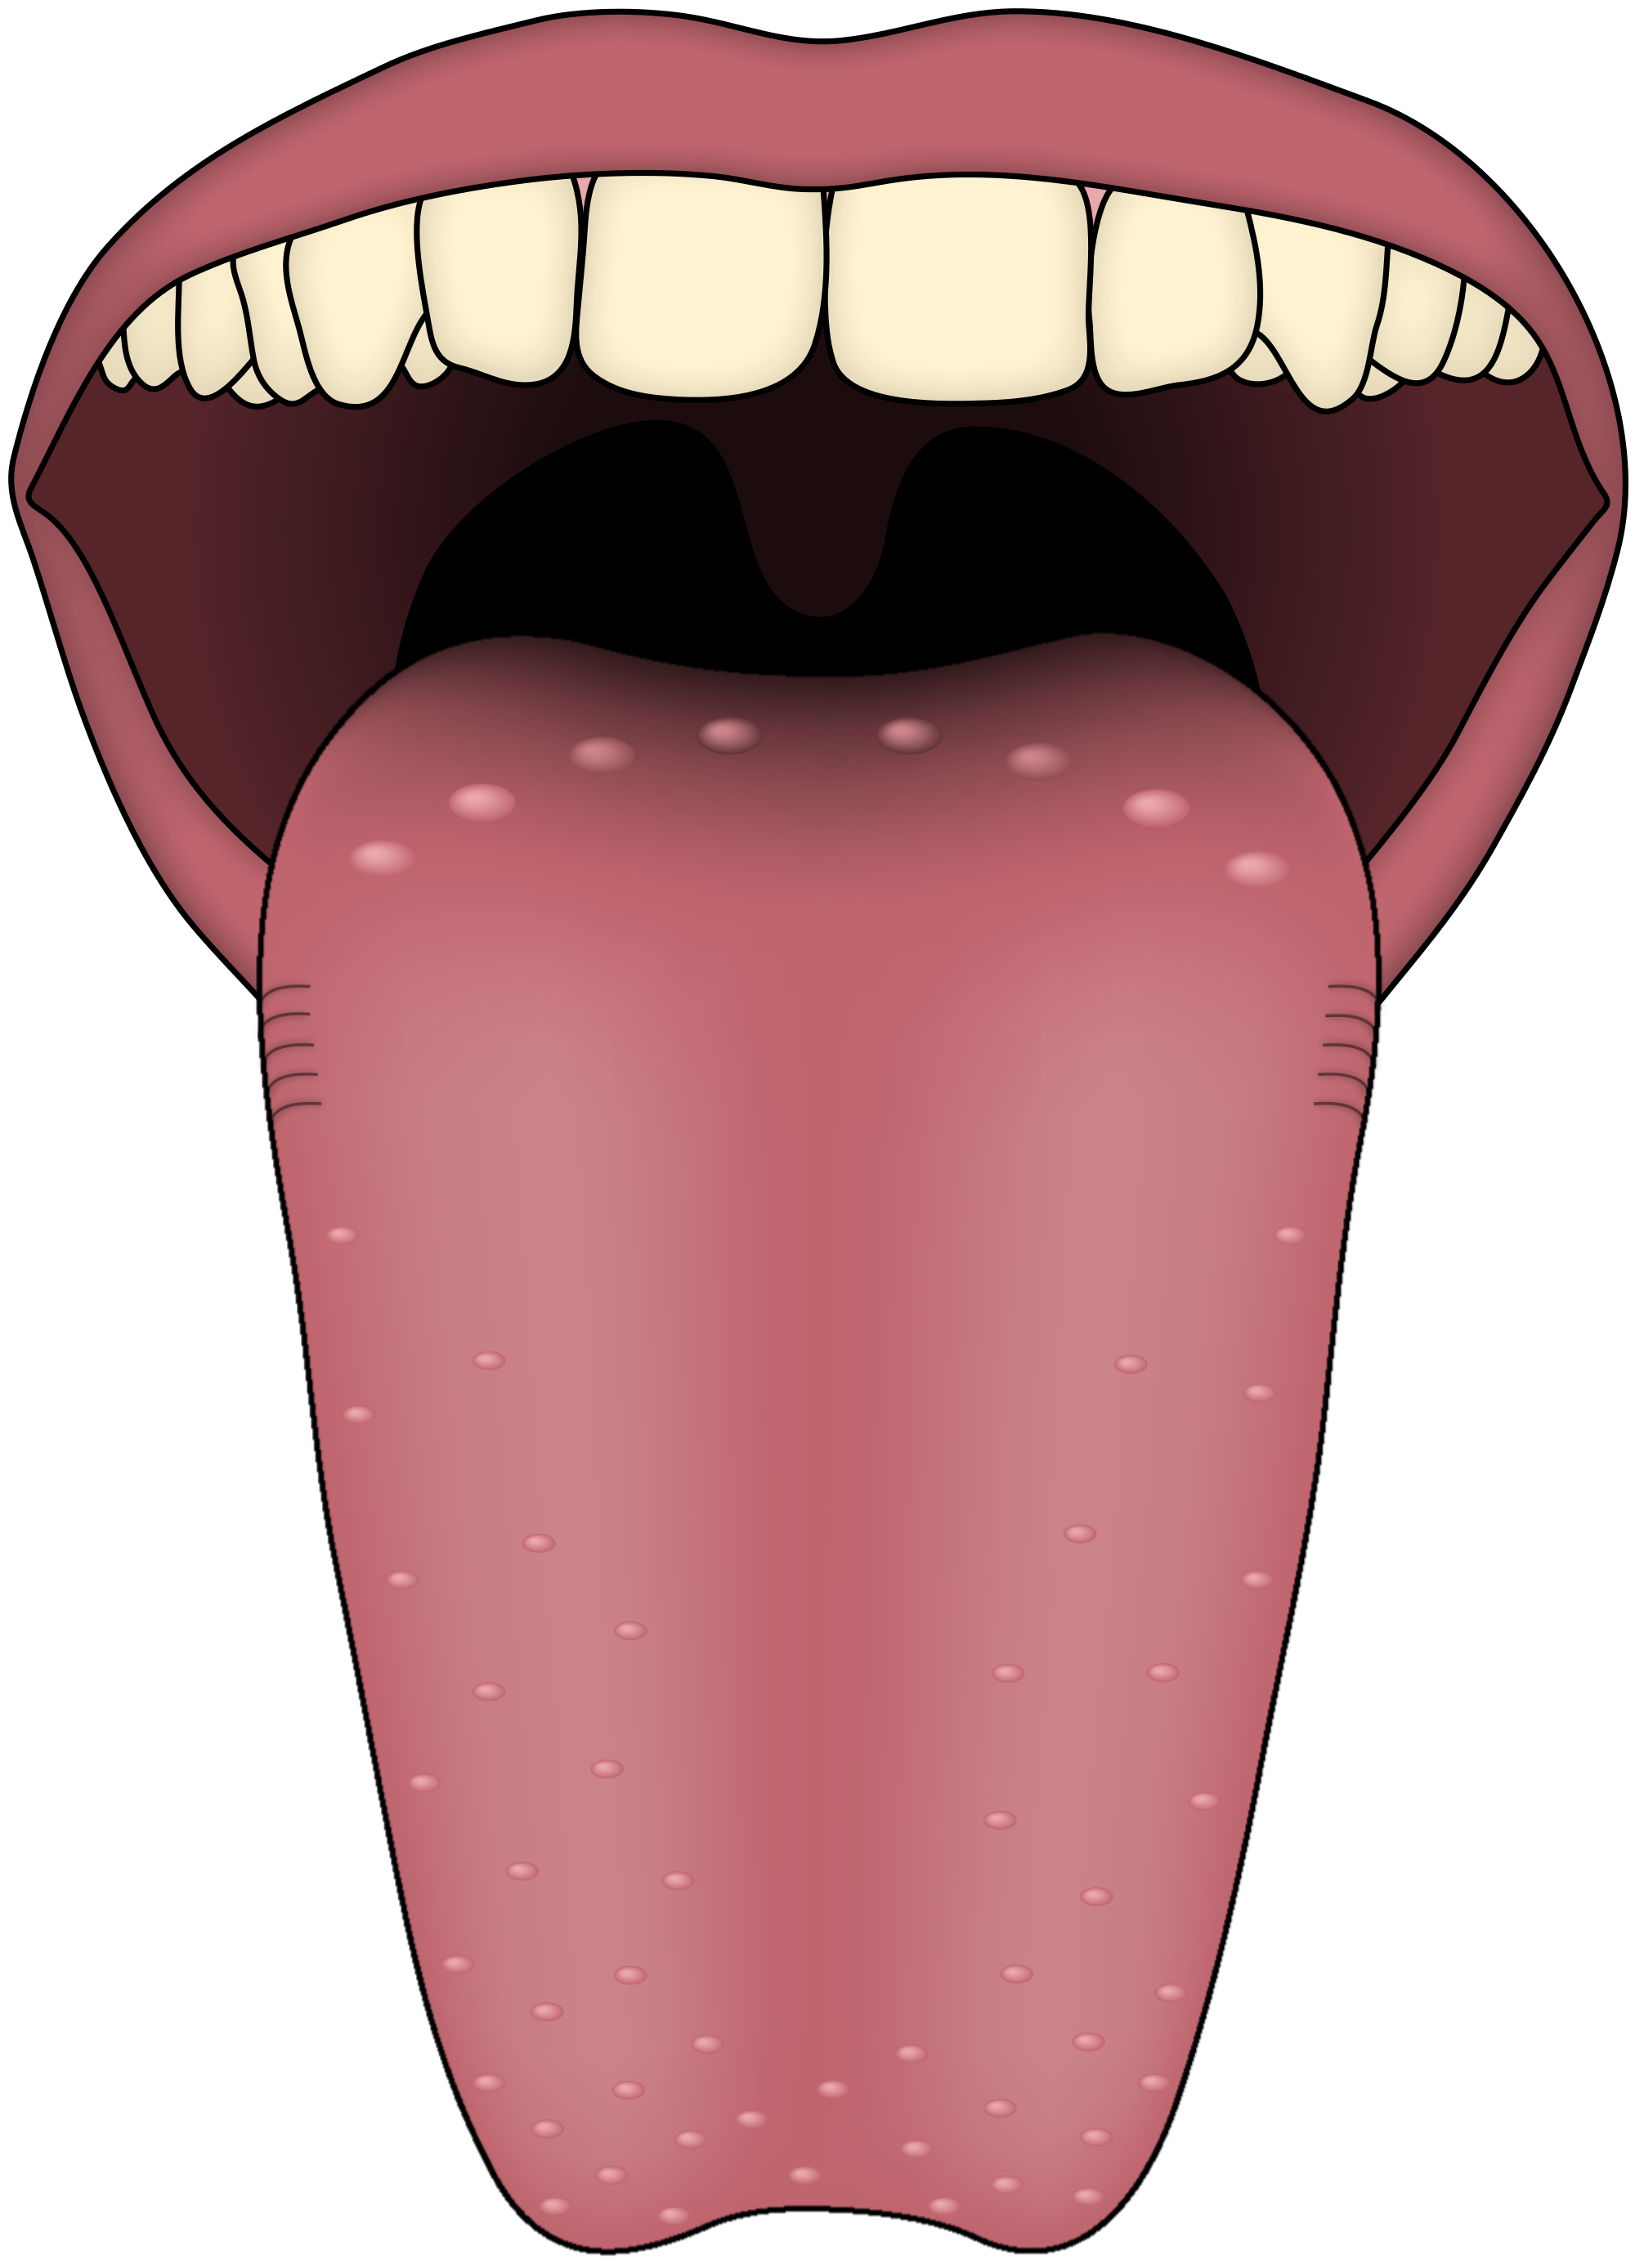 Human Tongue